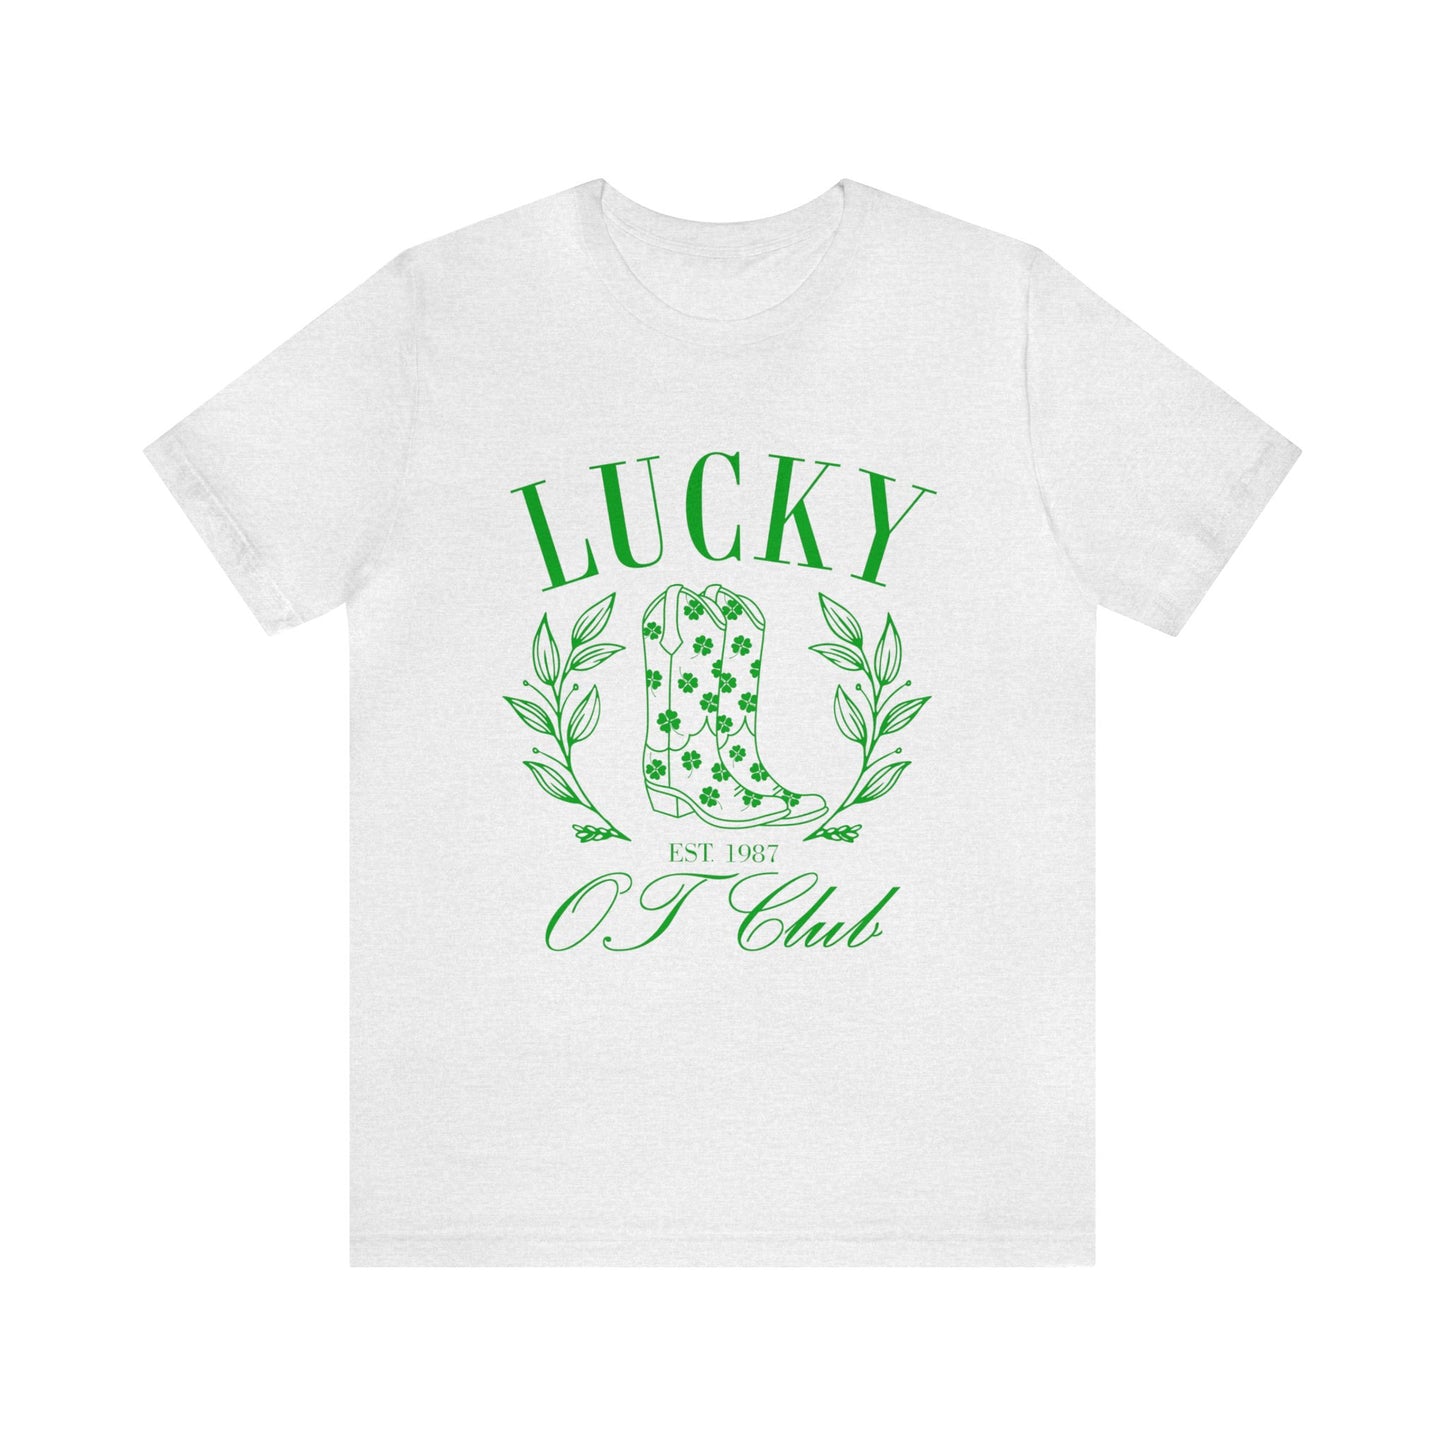 Lucky OT Club Jersey T-Shirt